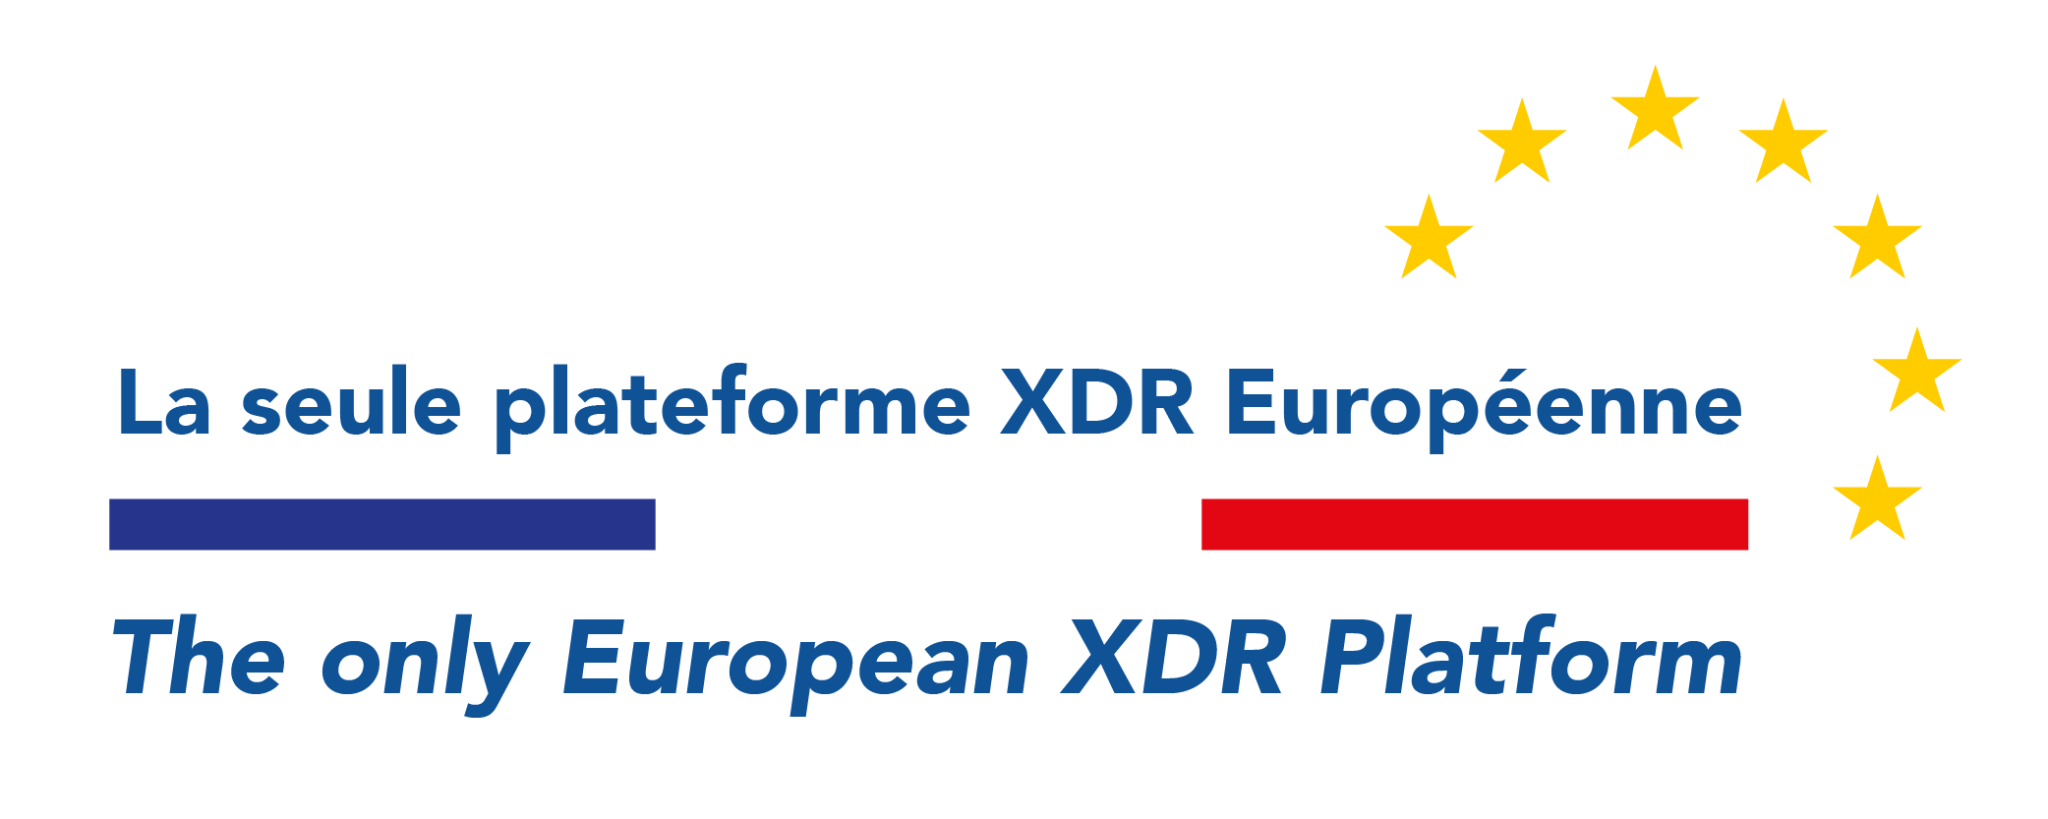 Wybierz jedyną europejską platformę XDR